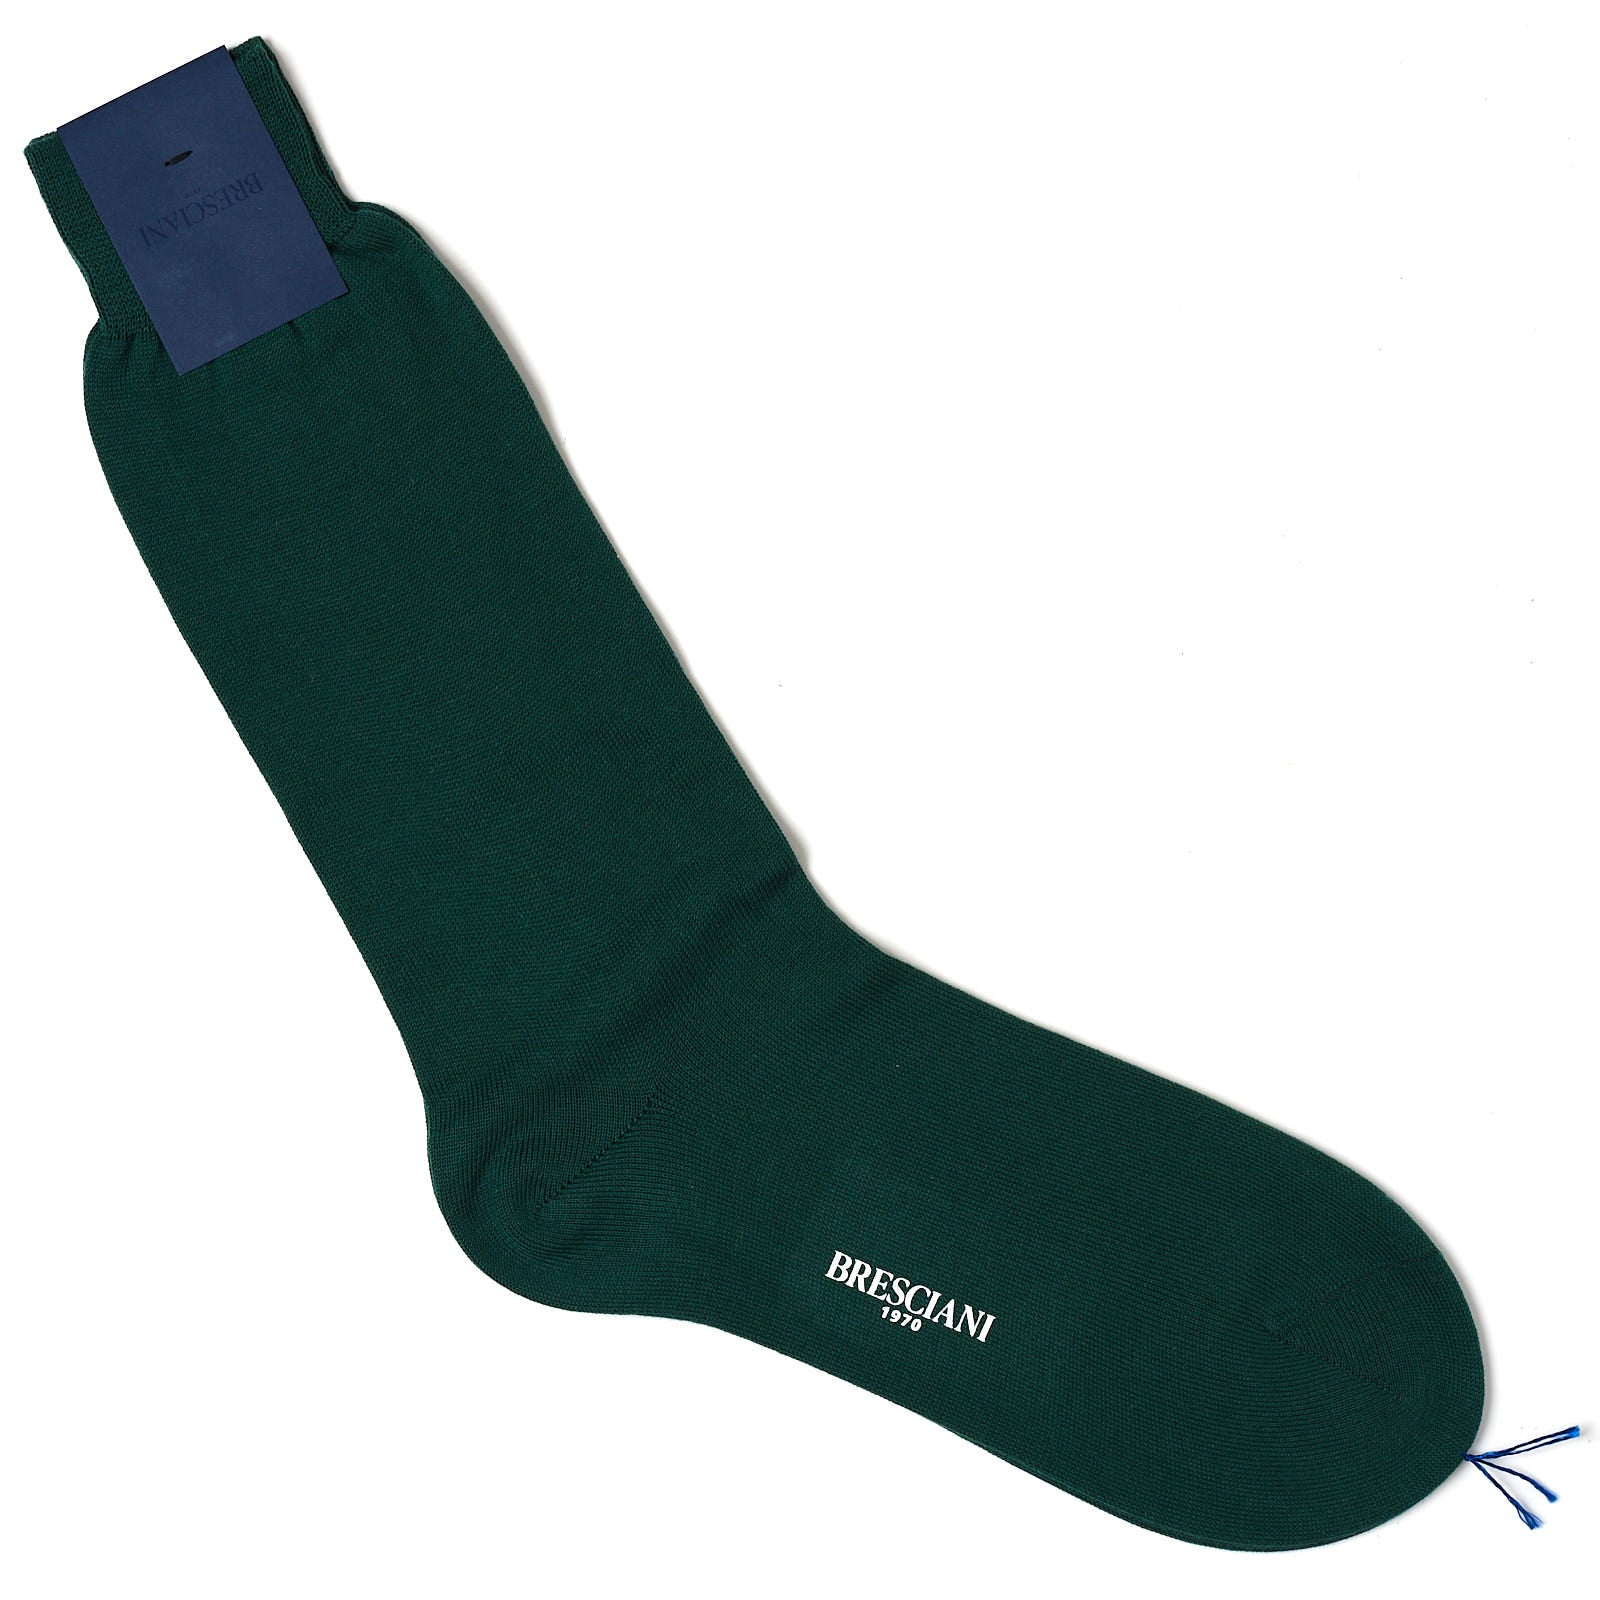 BRESCIANI Cotton Thicker Mid Calf Length Socks US L BRESCIANI